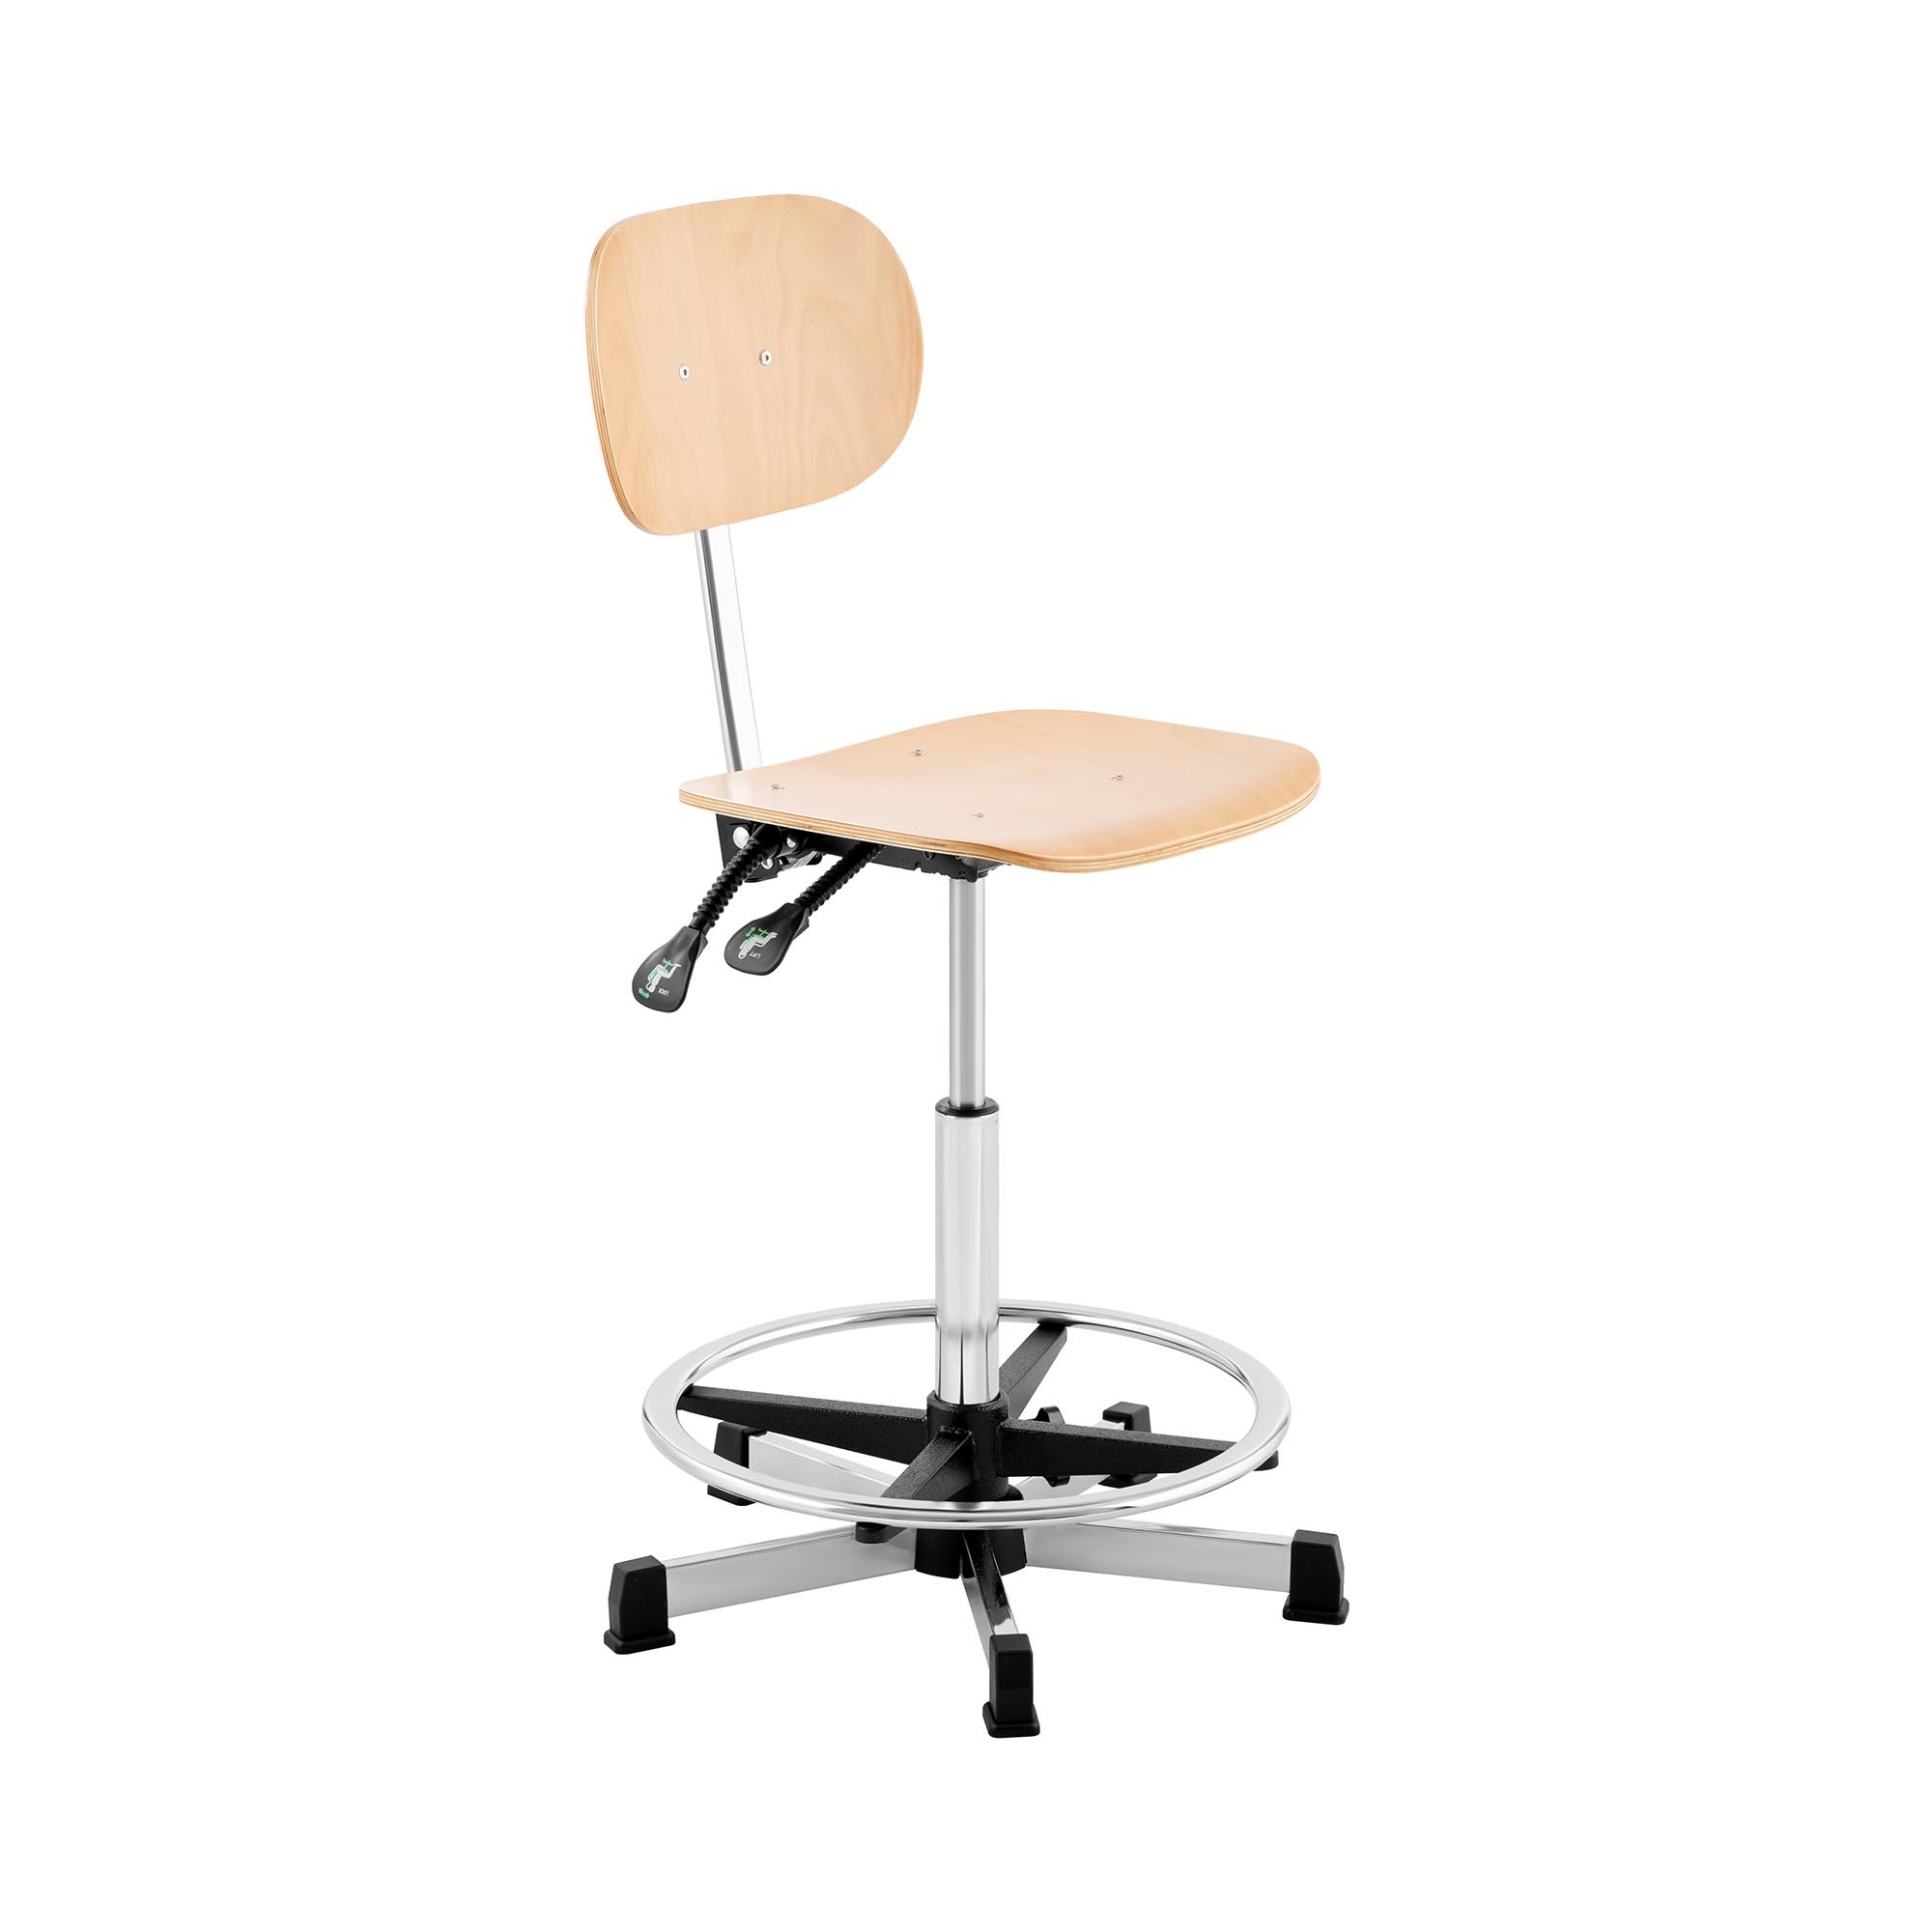 Fromm & Starck Bureaustoel - 120 kg - Chroom, Hout - voetring - in hoogte verstelbaar vanaf 550-800 mm